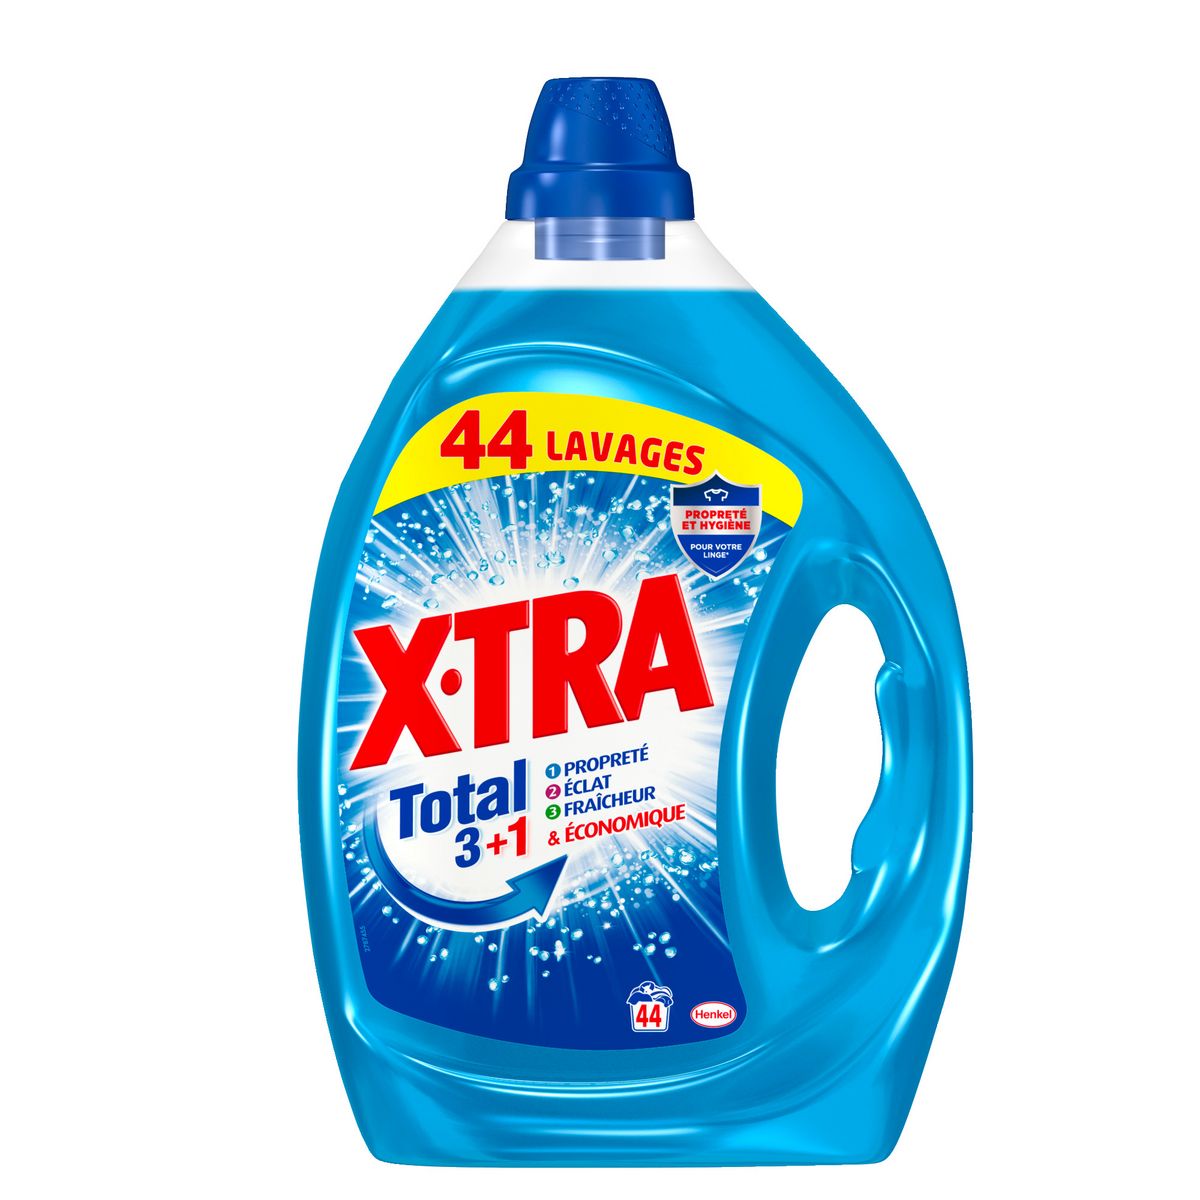 X-TRA Total + Lessive liquide fraicheur longue durée 44 lavages 2.2l pas  cher 